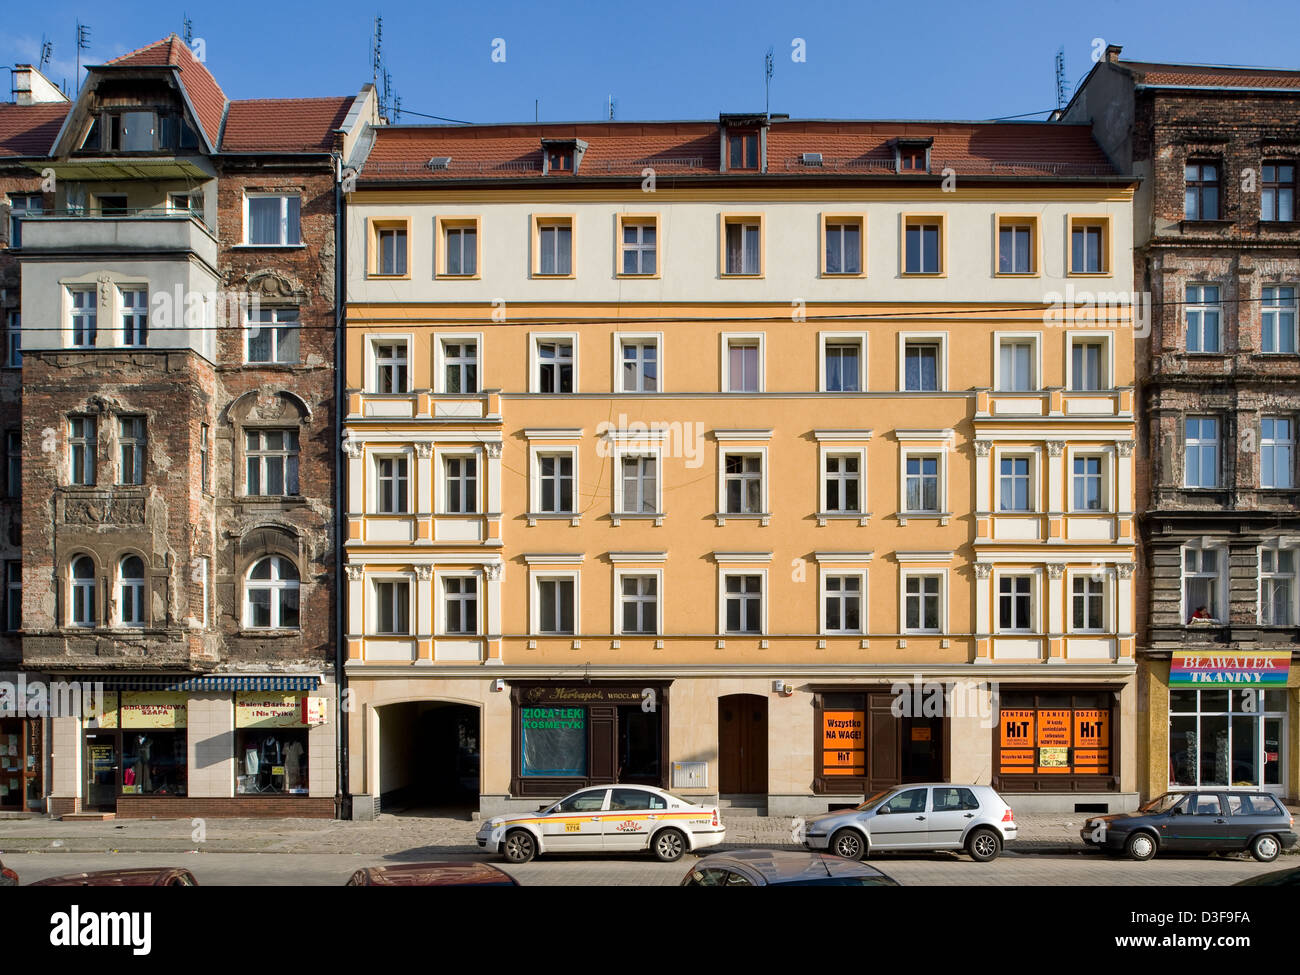 Wroclaw (Breslau), Pologne, et sièges de rénovation maison d'habitation à côté Banque D'Images